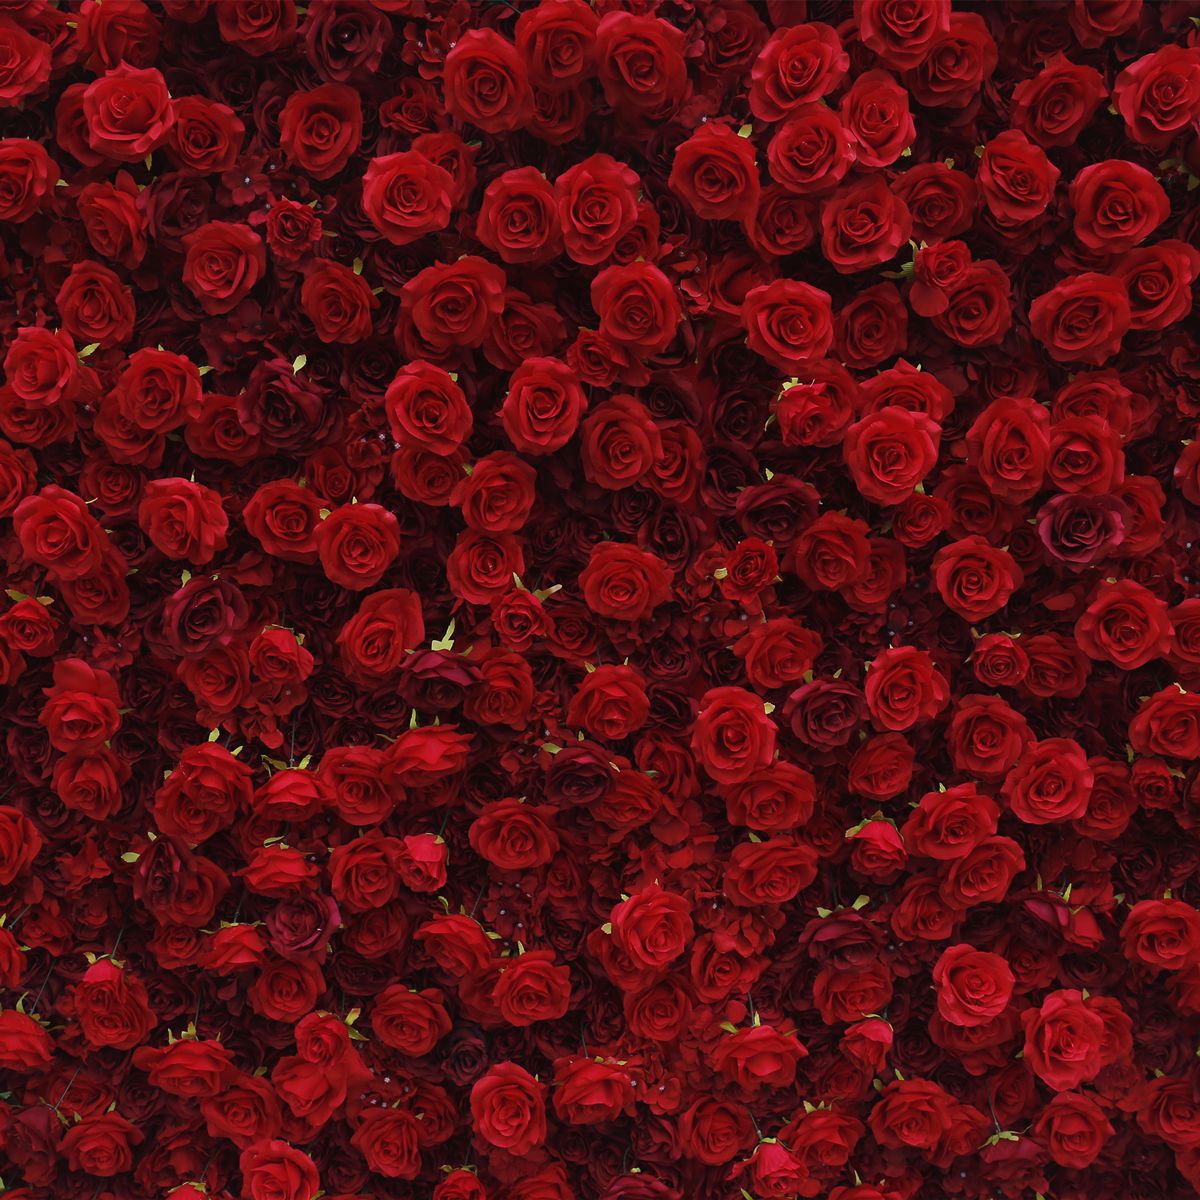 Pano vermelho 5D simulação de fundo de parede de flor parede de fundo Amazon comércio exterior decoração de casamento ao ar livre